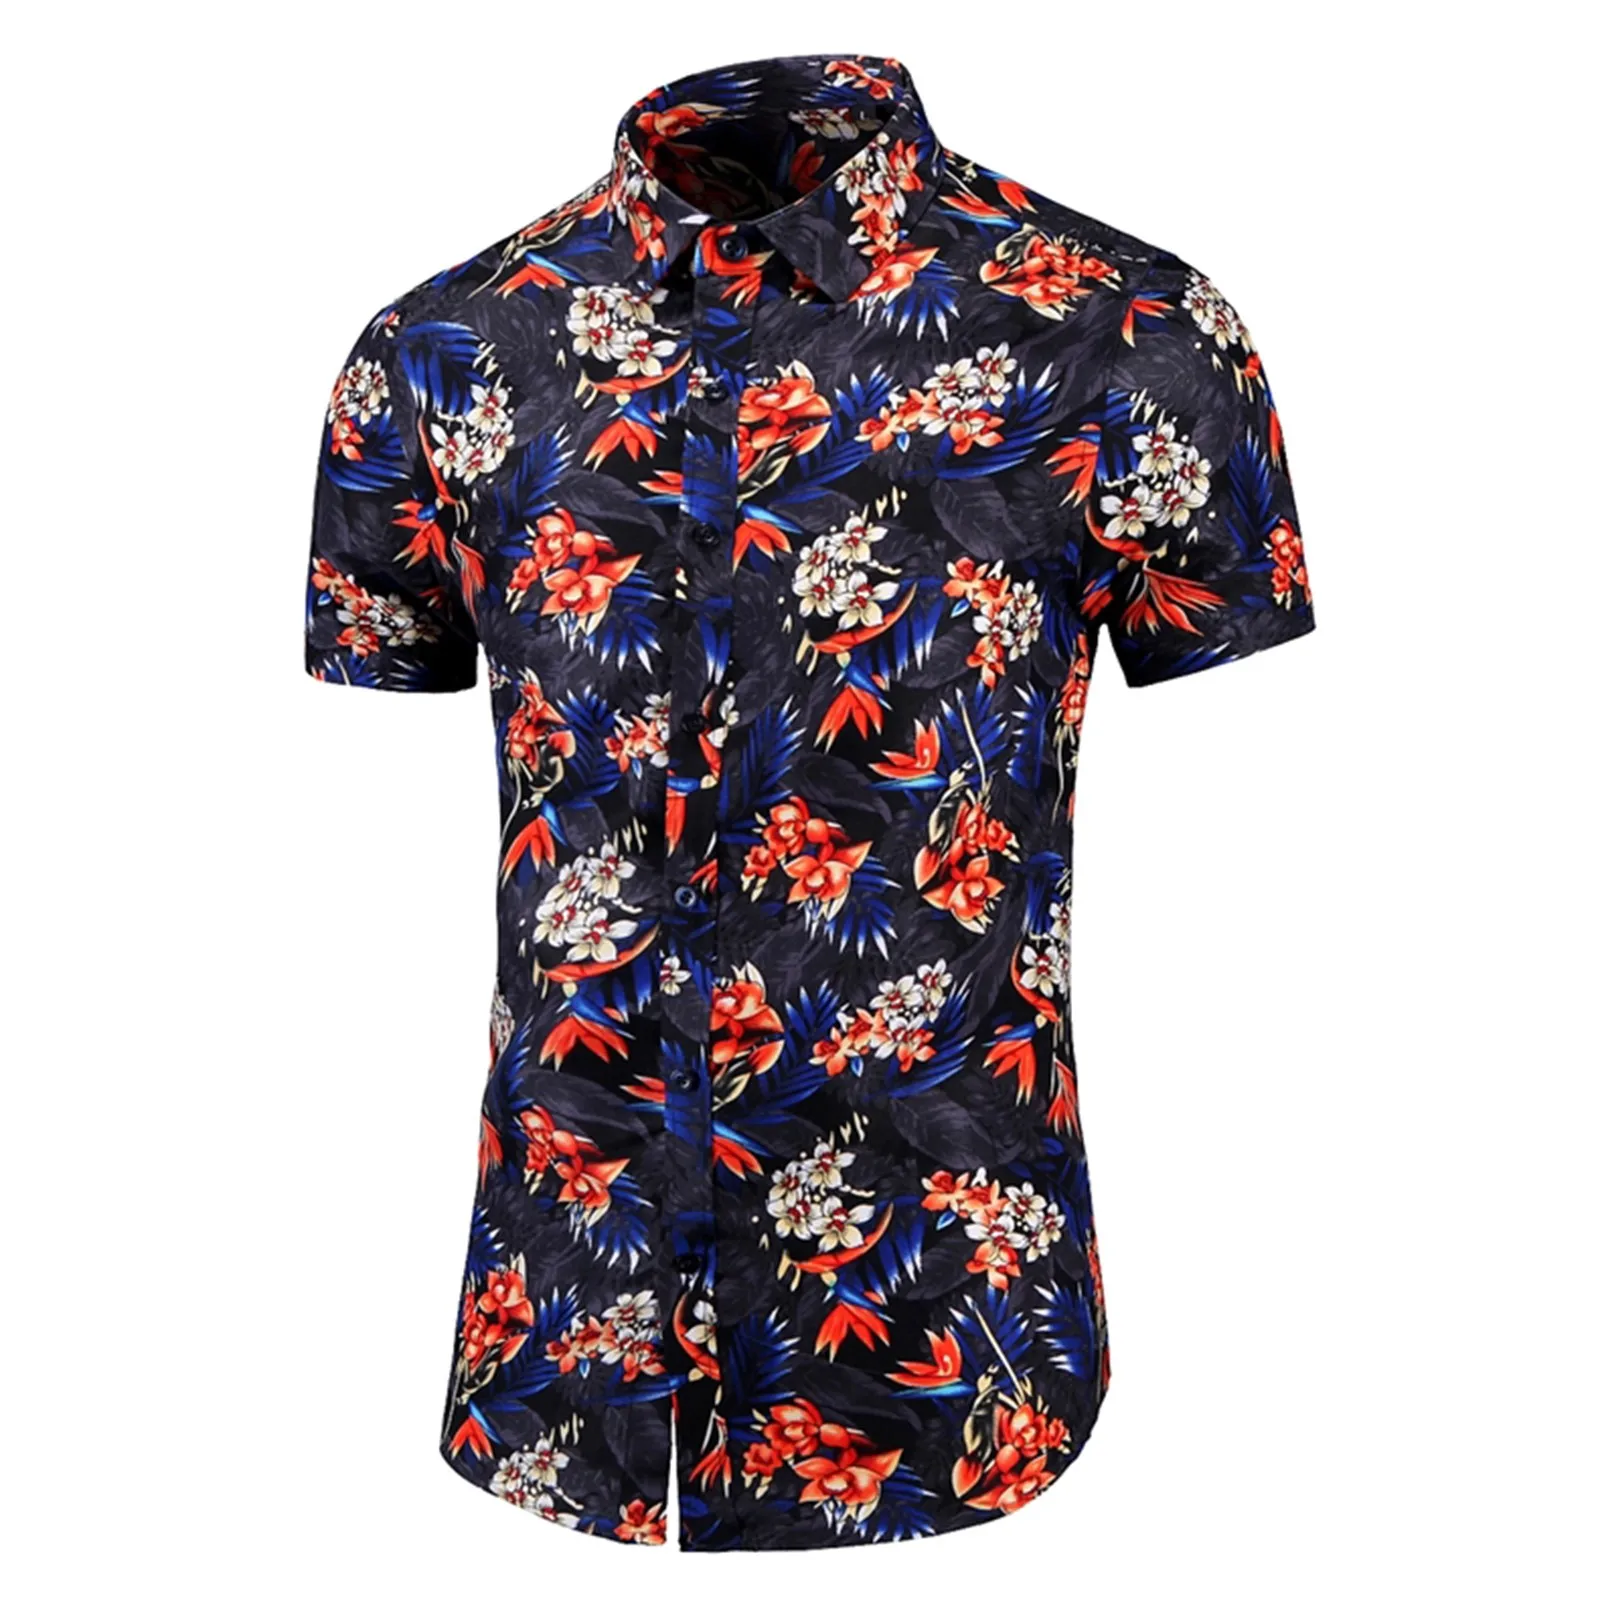 

Мужская рубашка с коротким рукавом, модель 2023 года, модная рубашка с принтом роз, растений, гавайская одежда для отдыха и отдыха